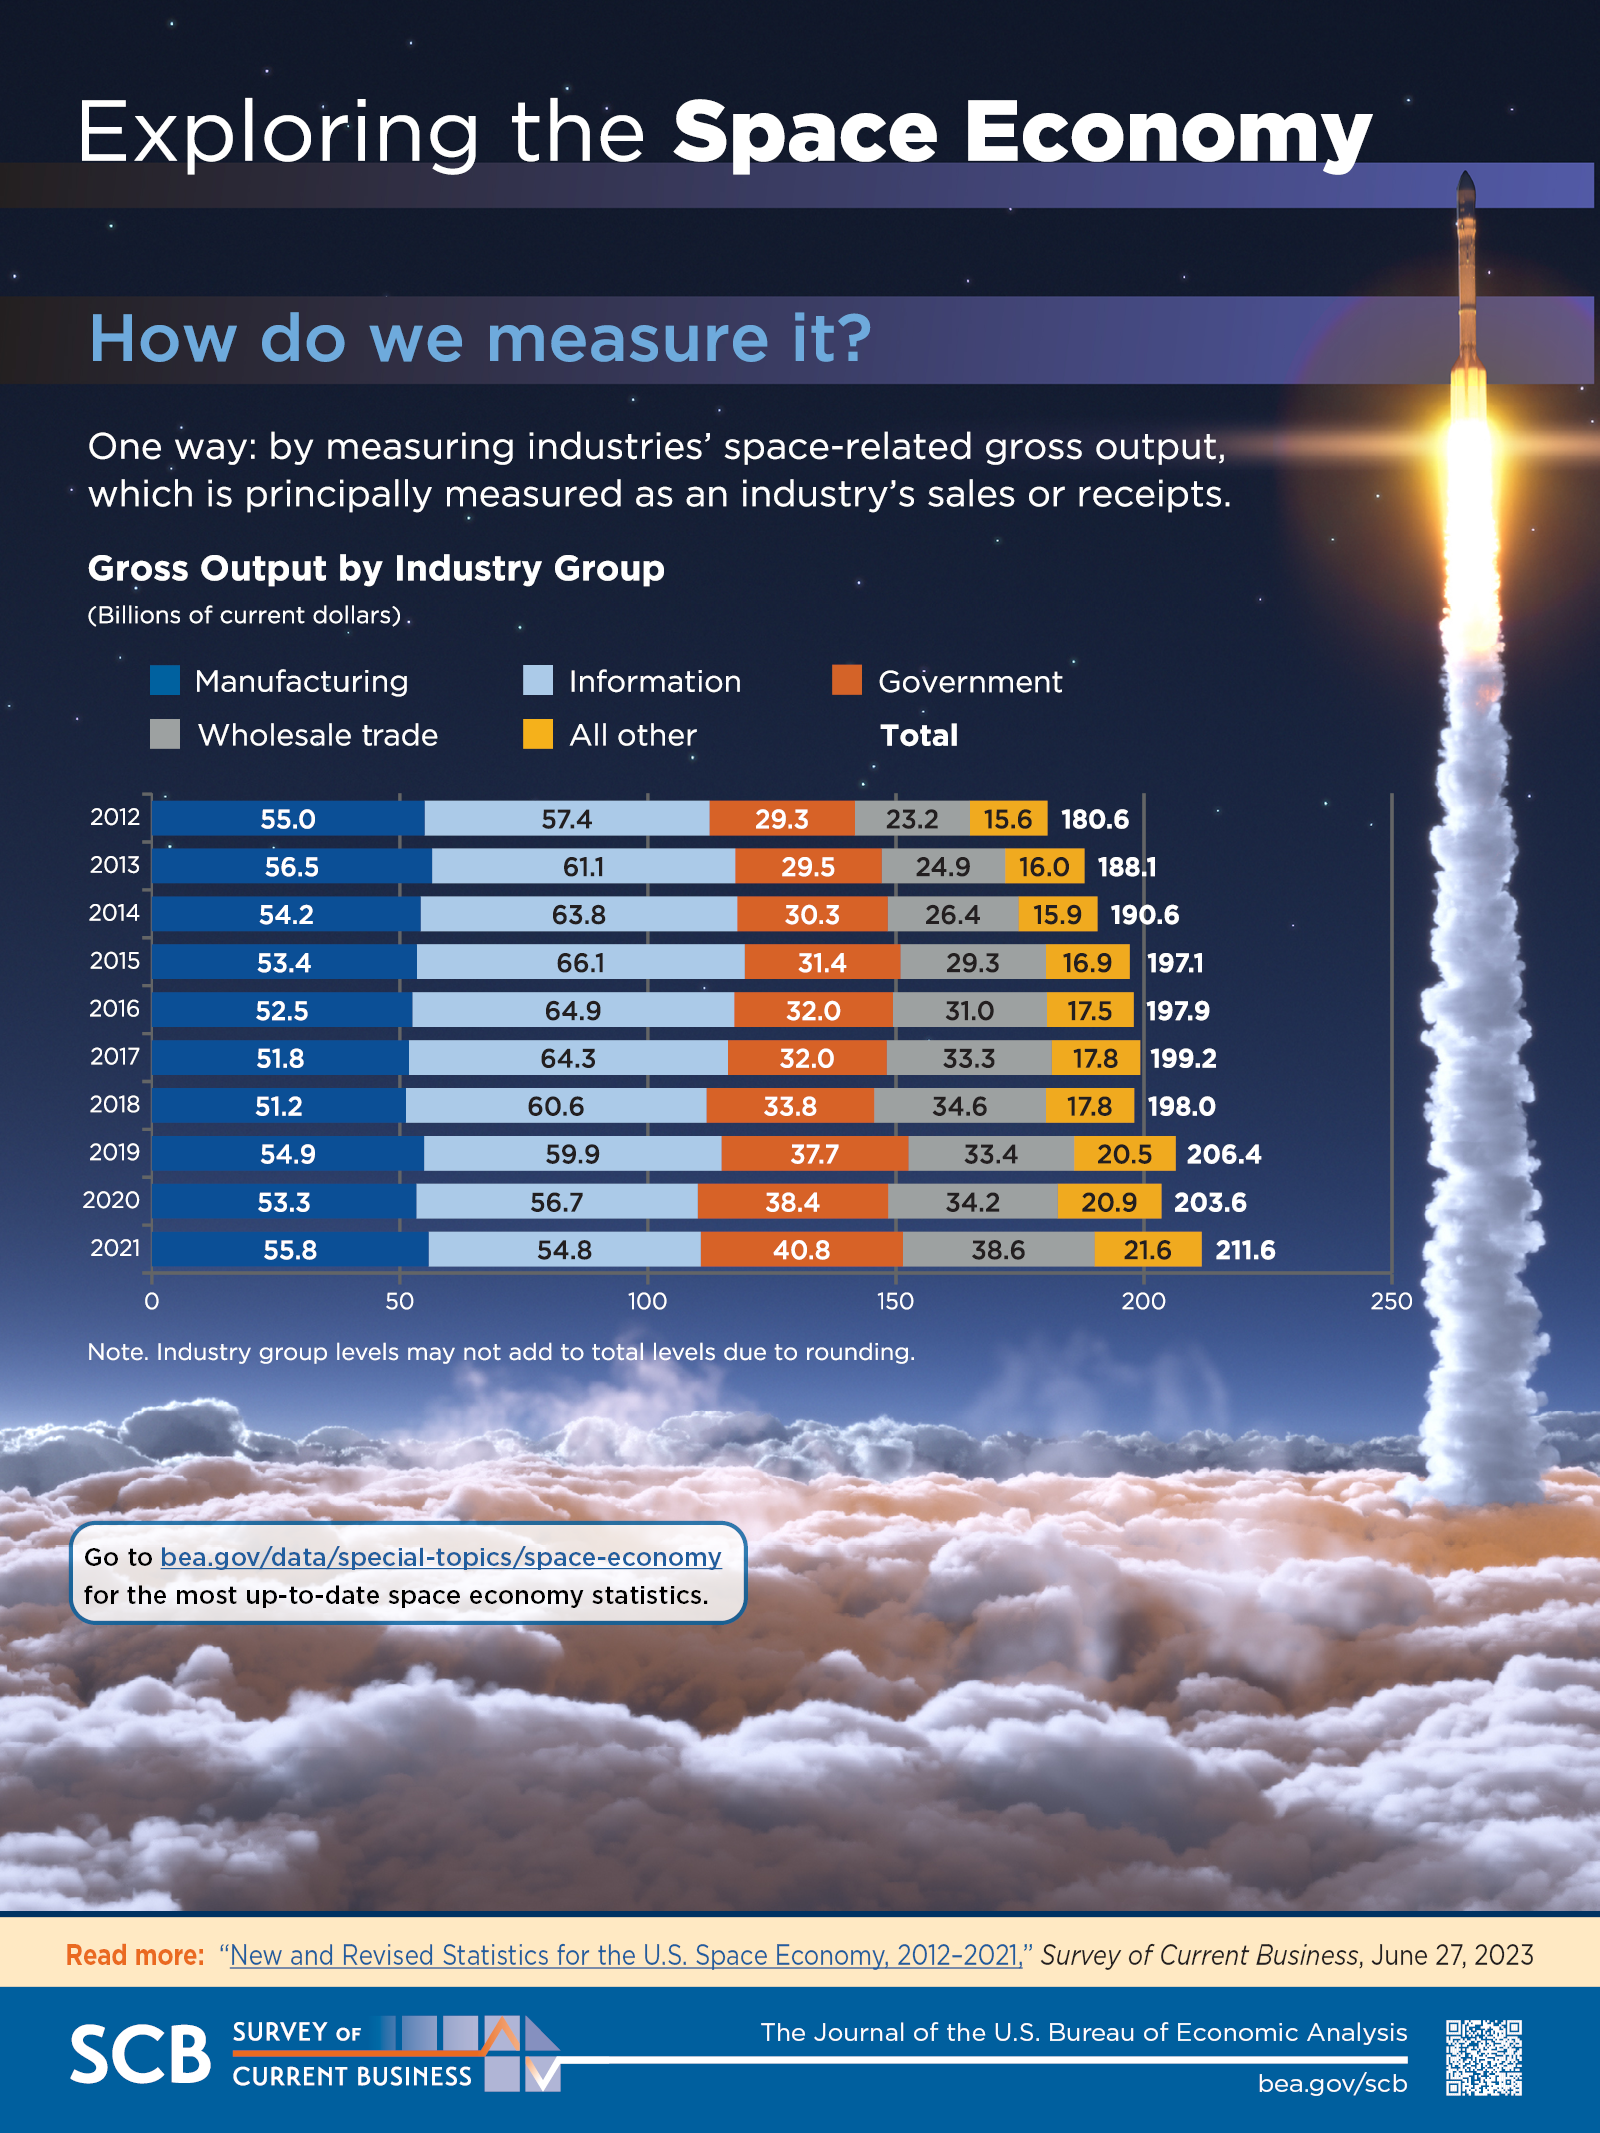 Space Economy Infographic